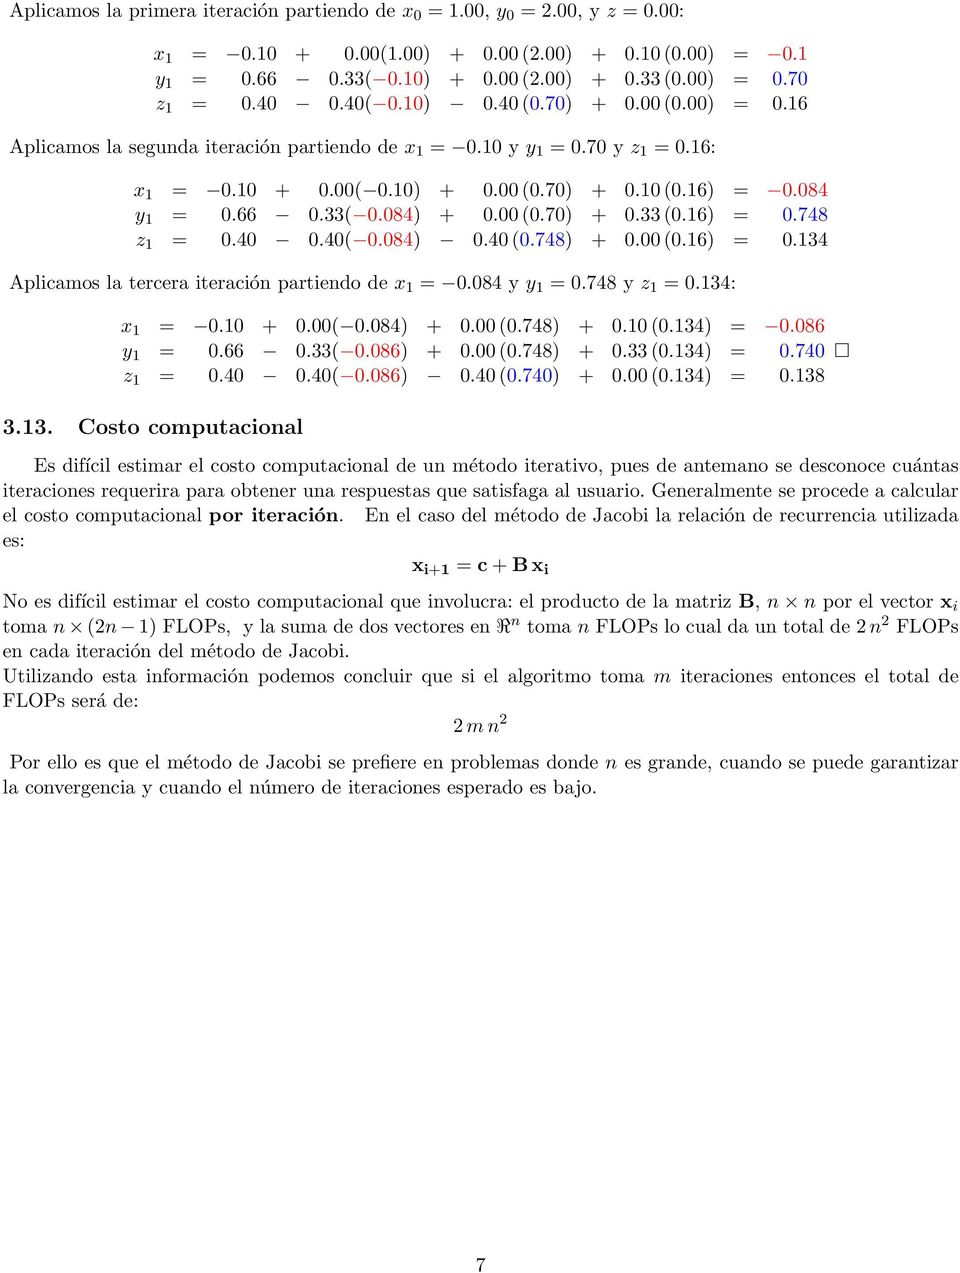 66 0.33( 0.084) + 0.00 (0.70) + 0.33 (0.16) = 0.748 z 1 = 0.40 0.40( 0.084) 0.40 (0.748) + 0.00 (0.16) = 0.134 Aplicamos la tercera iteración partiendo de x 1 = 0.084 y y 1 = 0.748 y z 1 = 0.